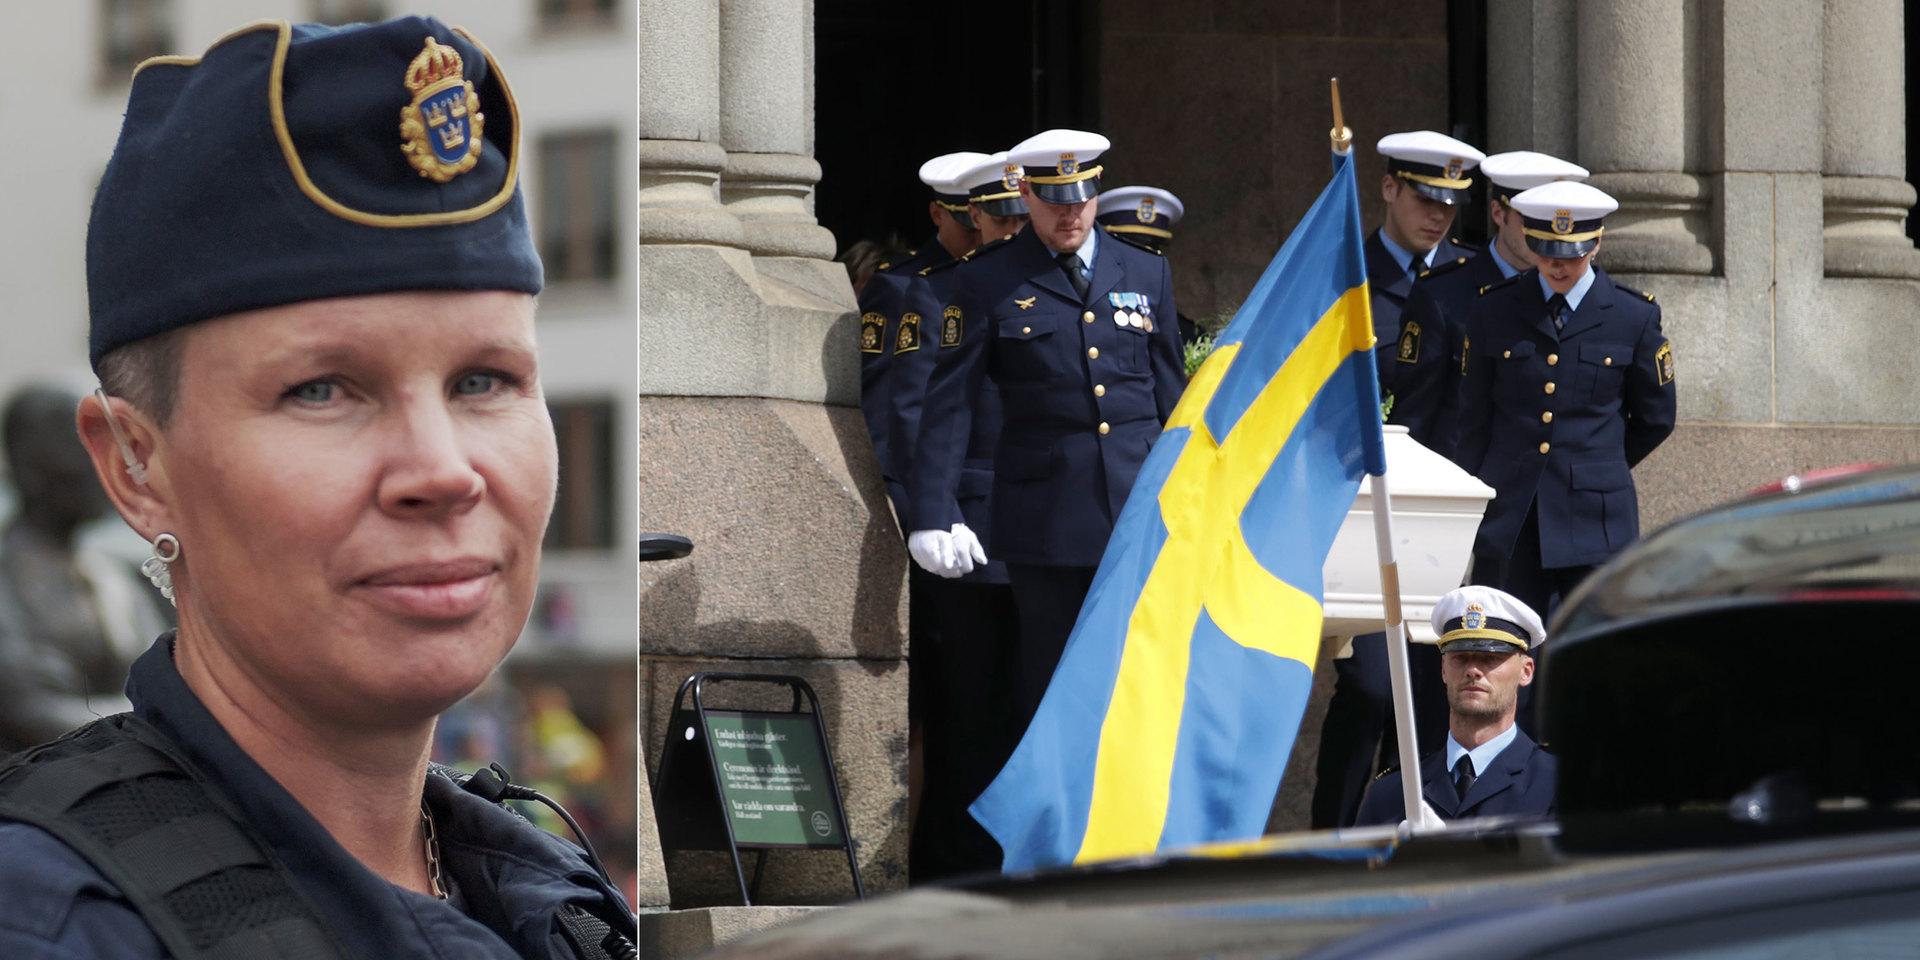 I fredags väcktes åtal för mordet på min kollega Andreas. Mina tankar går främst till Andreas anhöriga men också till alla på den tunna blåa linjen, skriver Hannah Bergelin, polis i Göteborg.